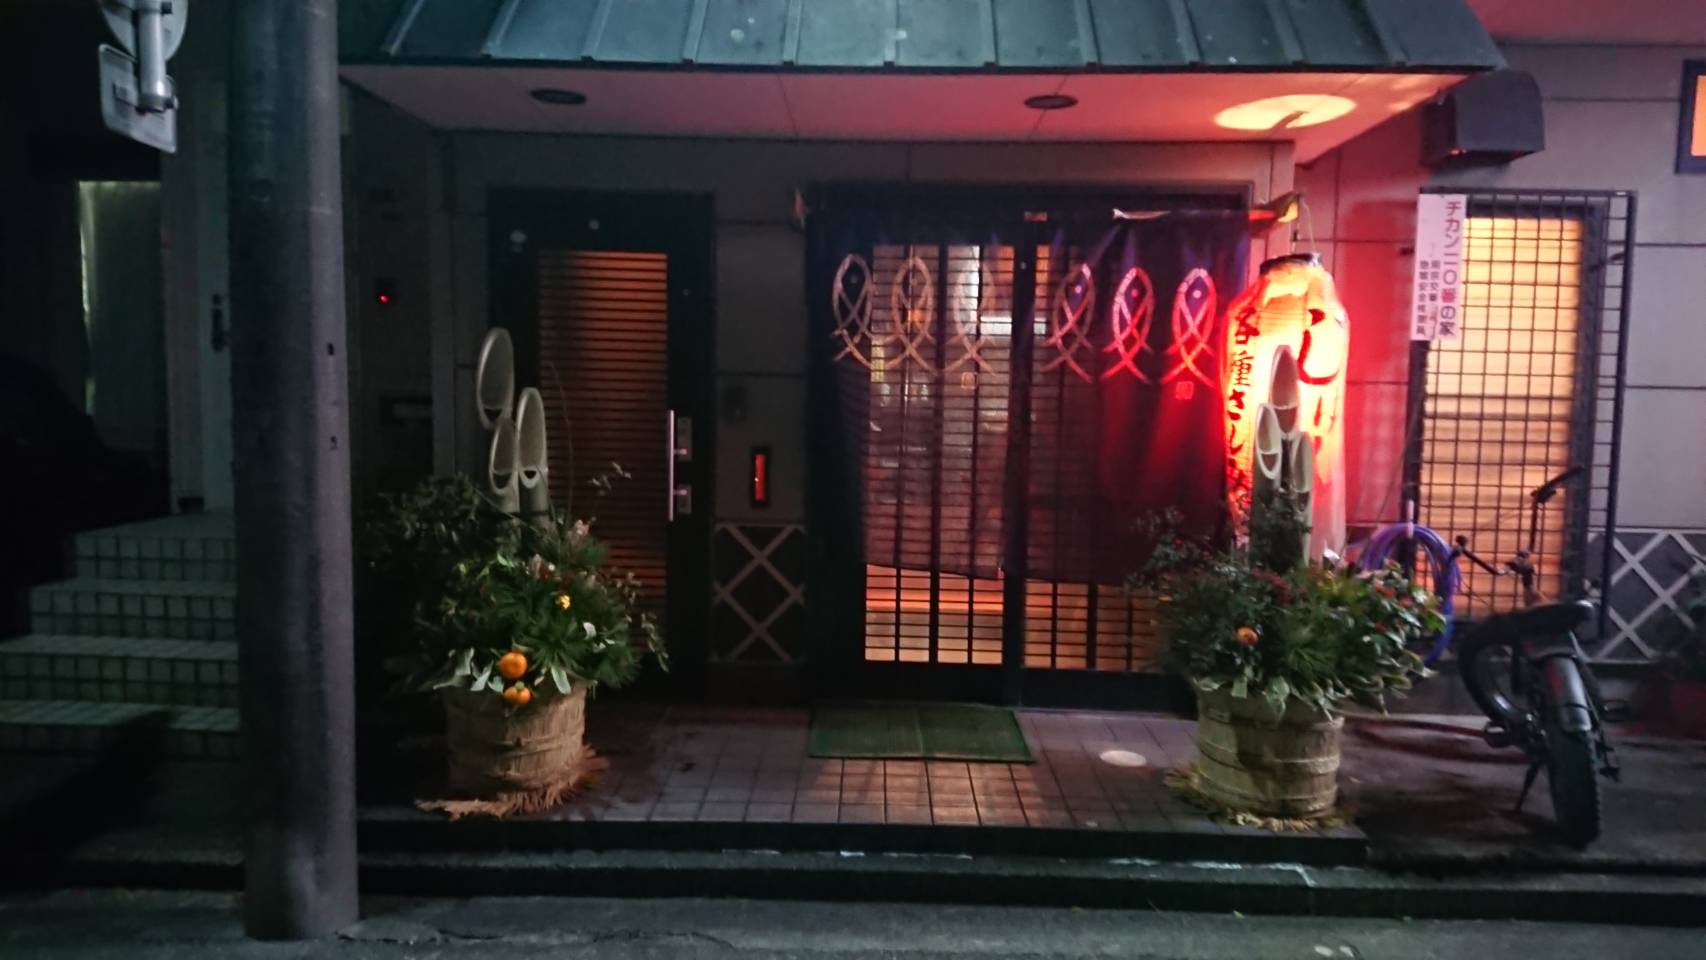 お店の正面写真です。
正月の門松飾っているときに撮影したものです。